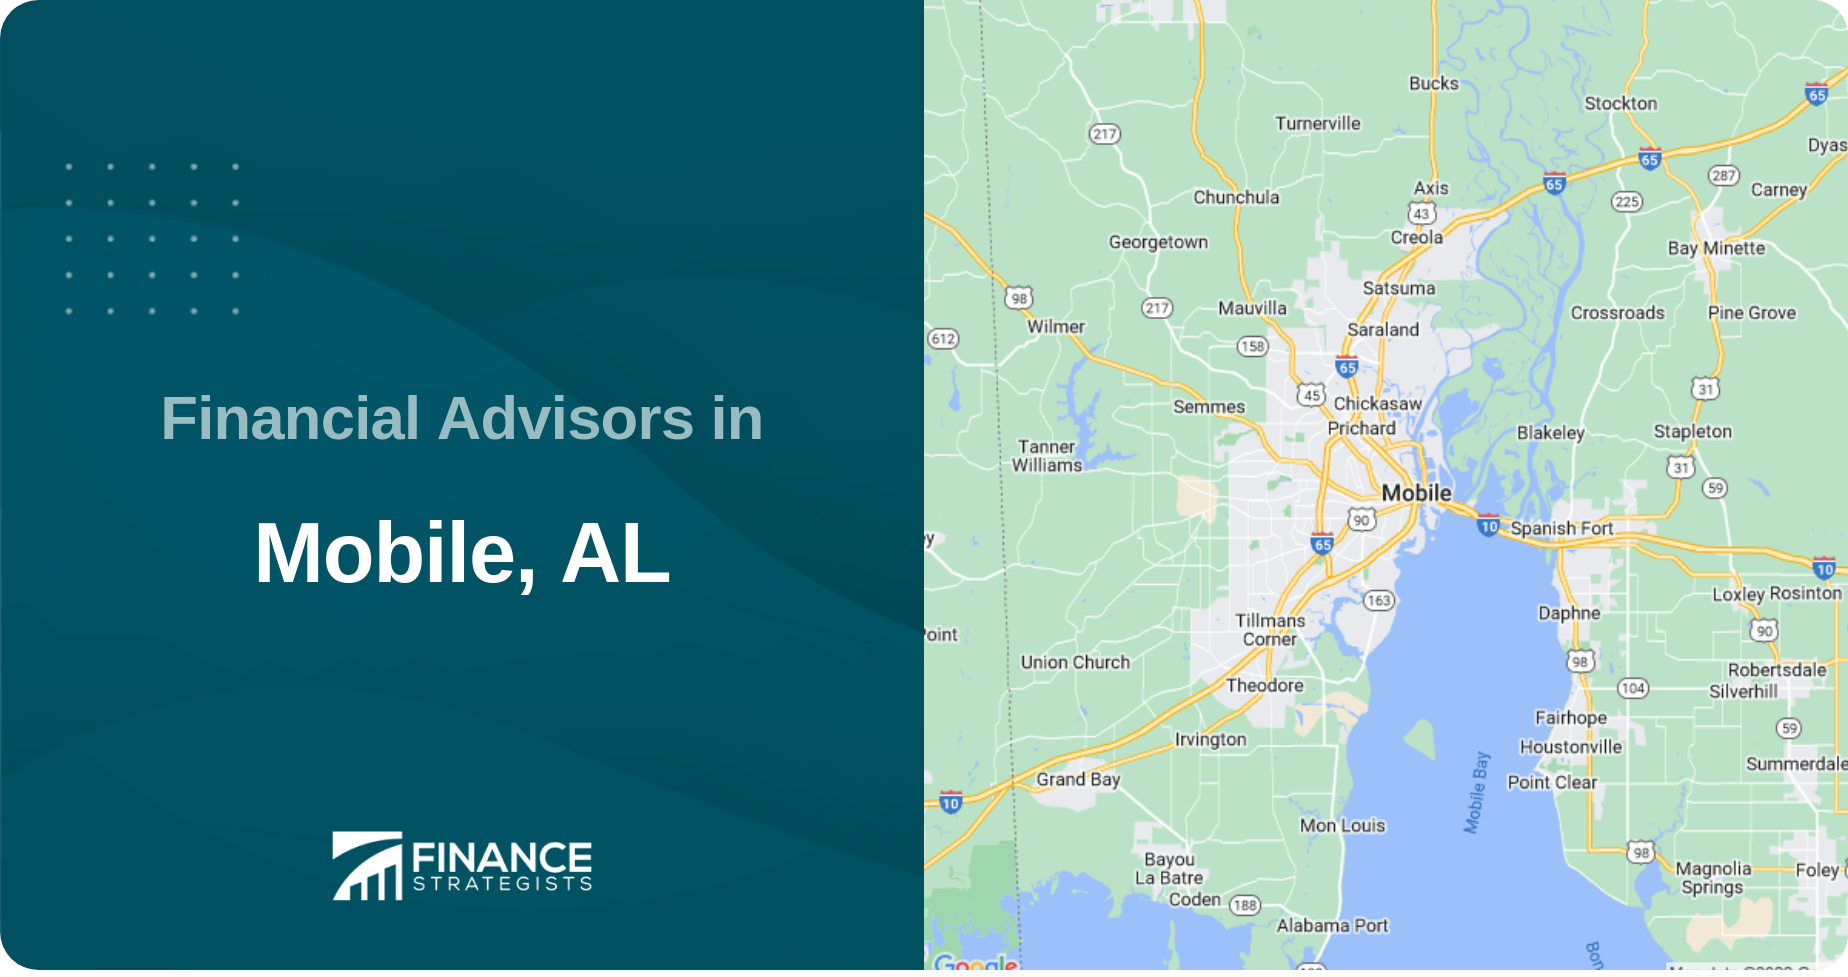 Financial Advisors in Mobile, AL